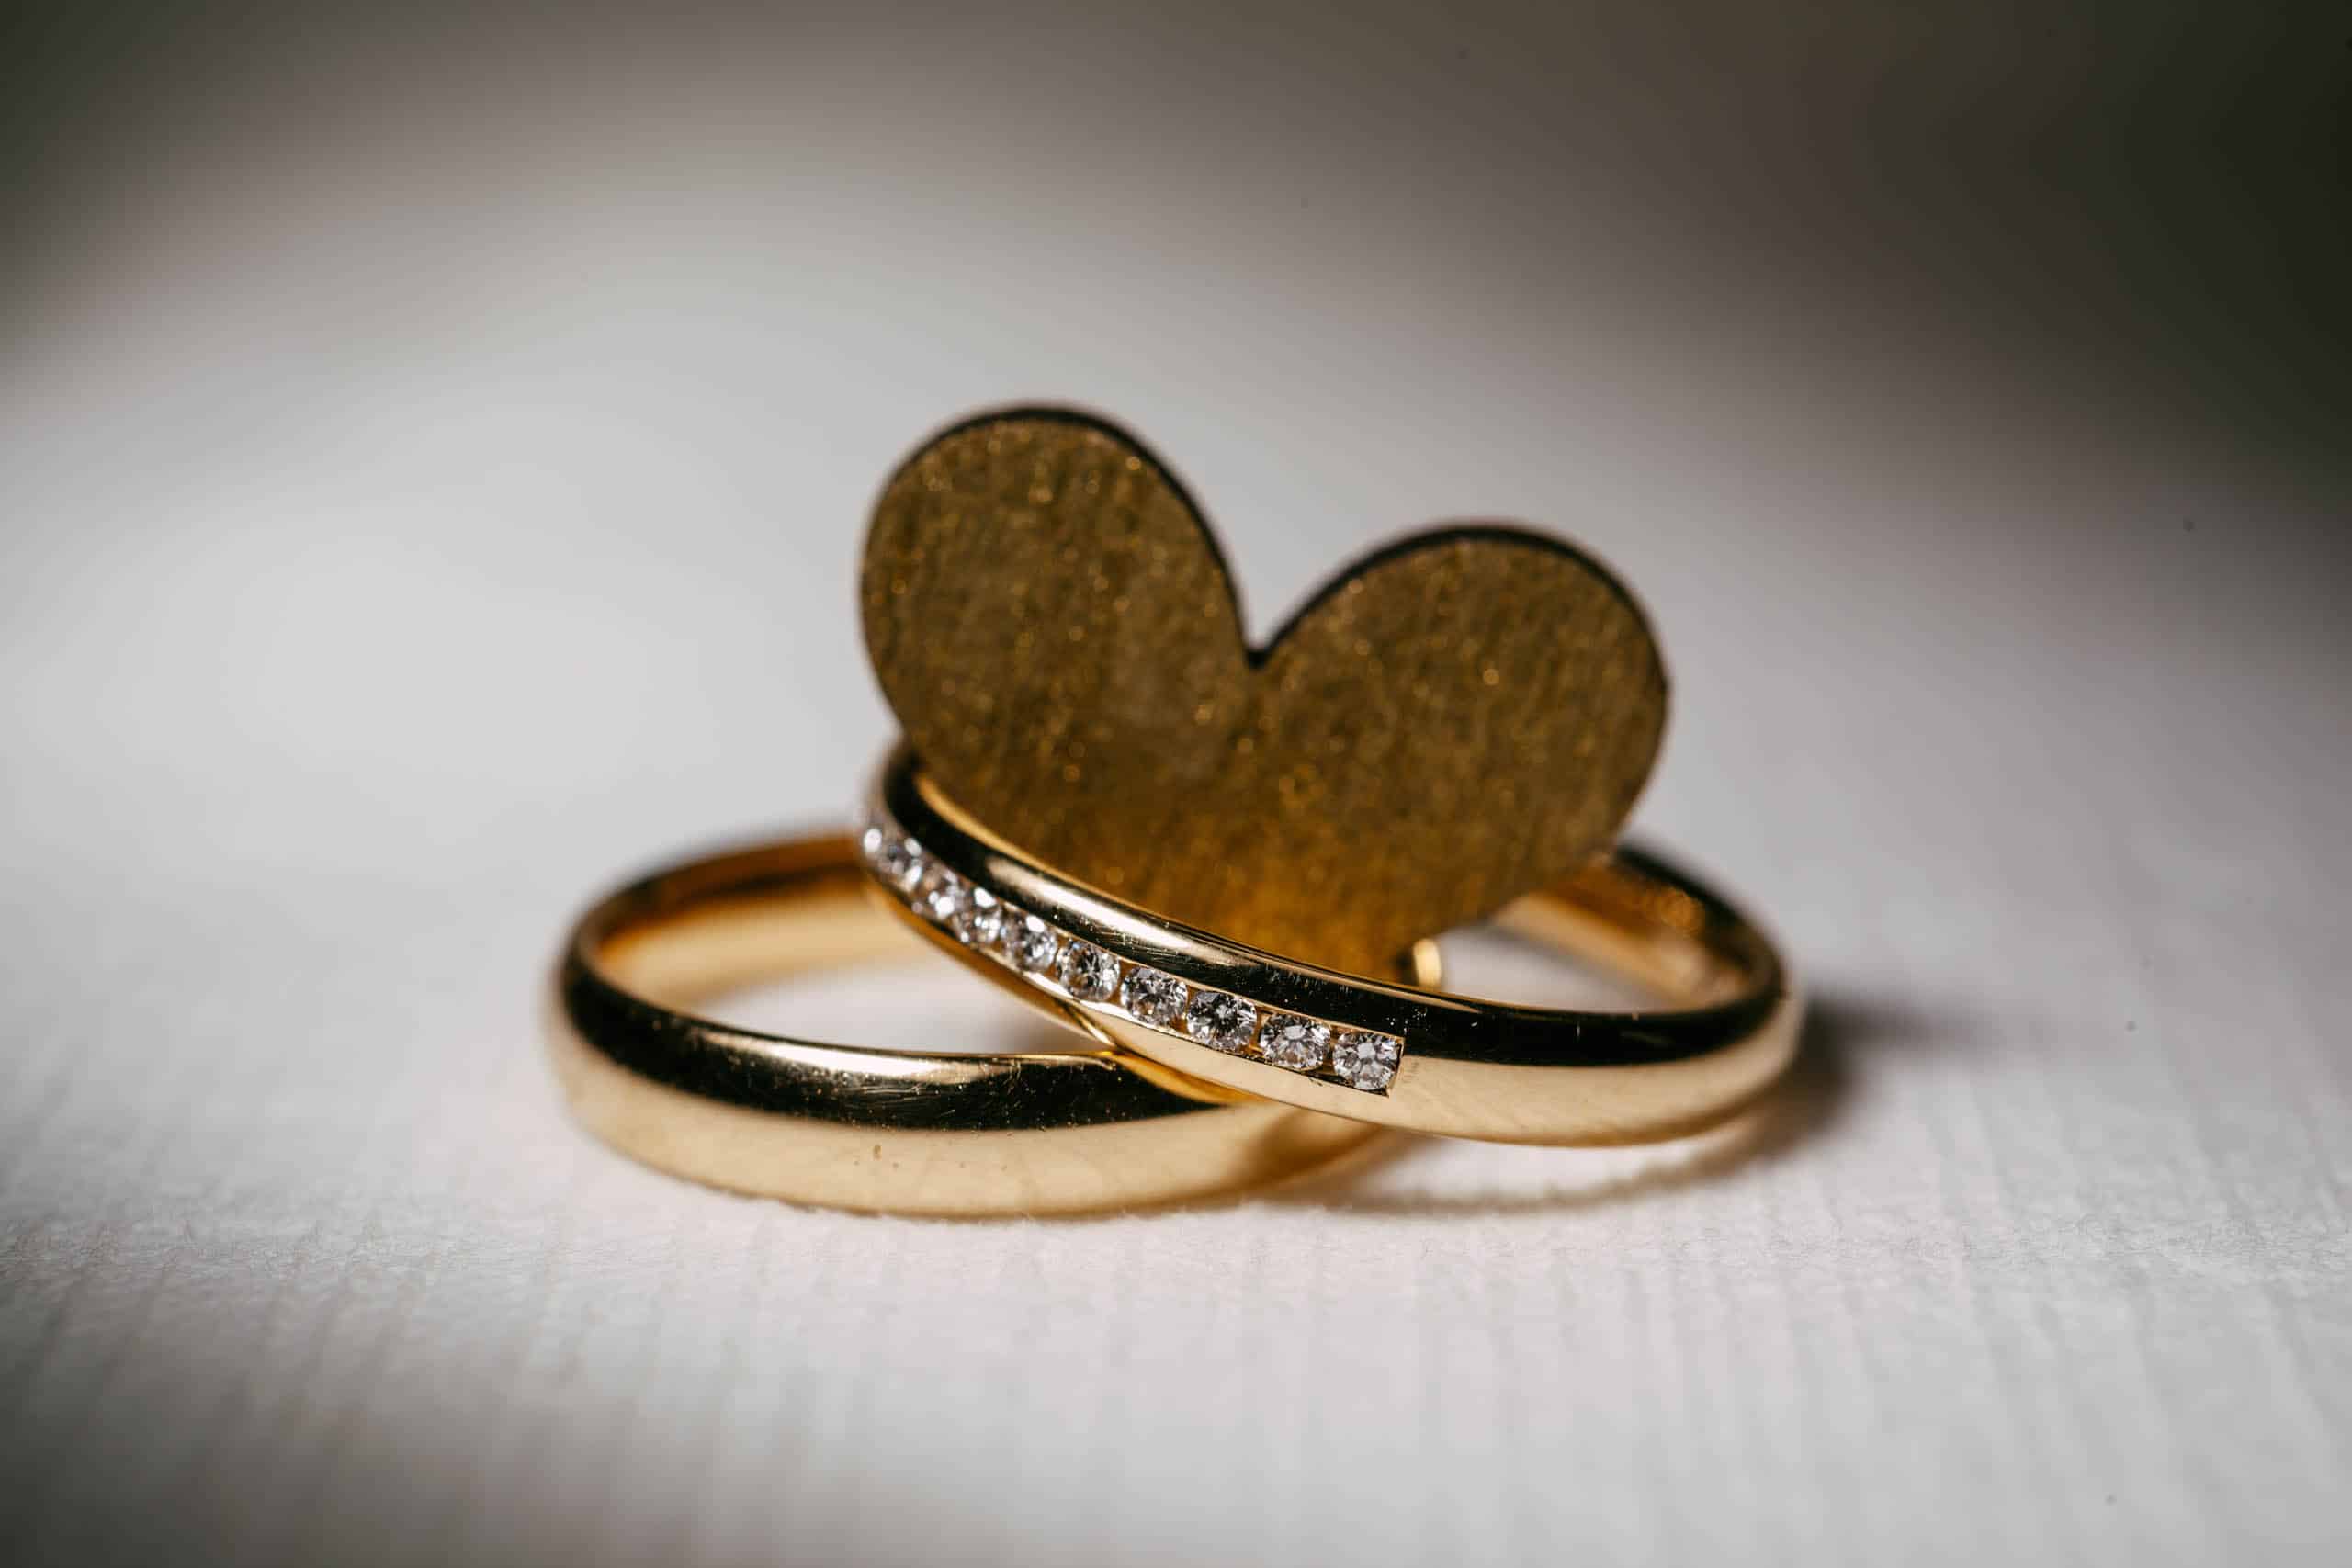 Twee prachtige gouden trouwringen met een hartvormige diamant in het midden, symbool voor mooie trouwdata.